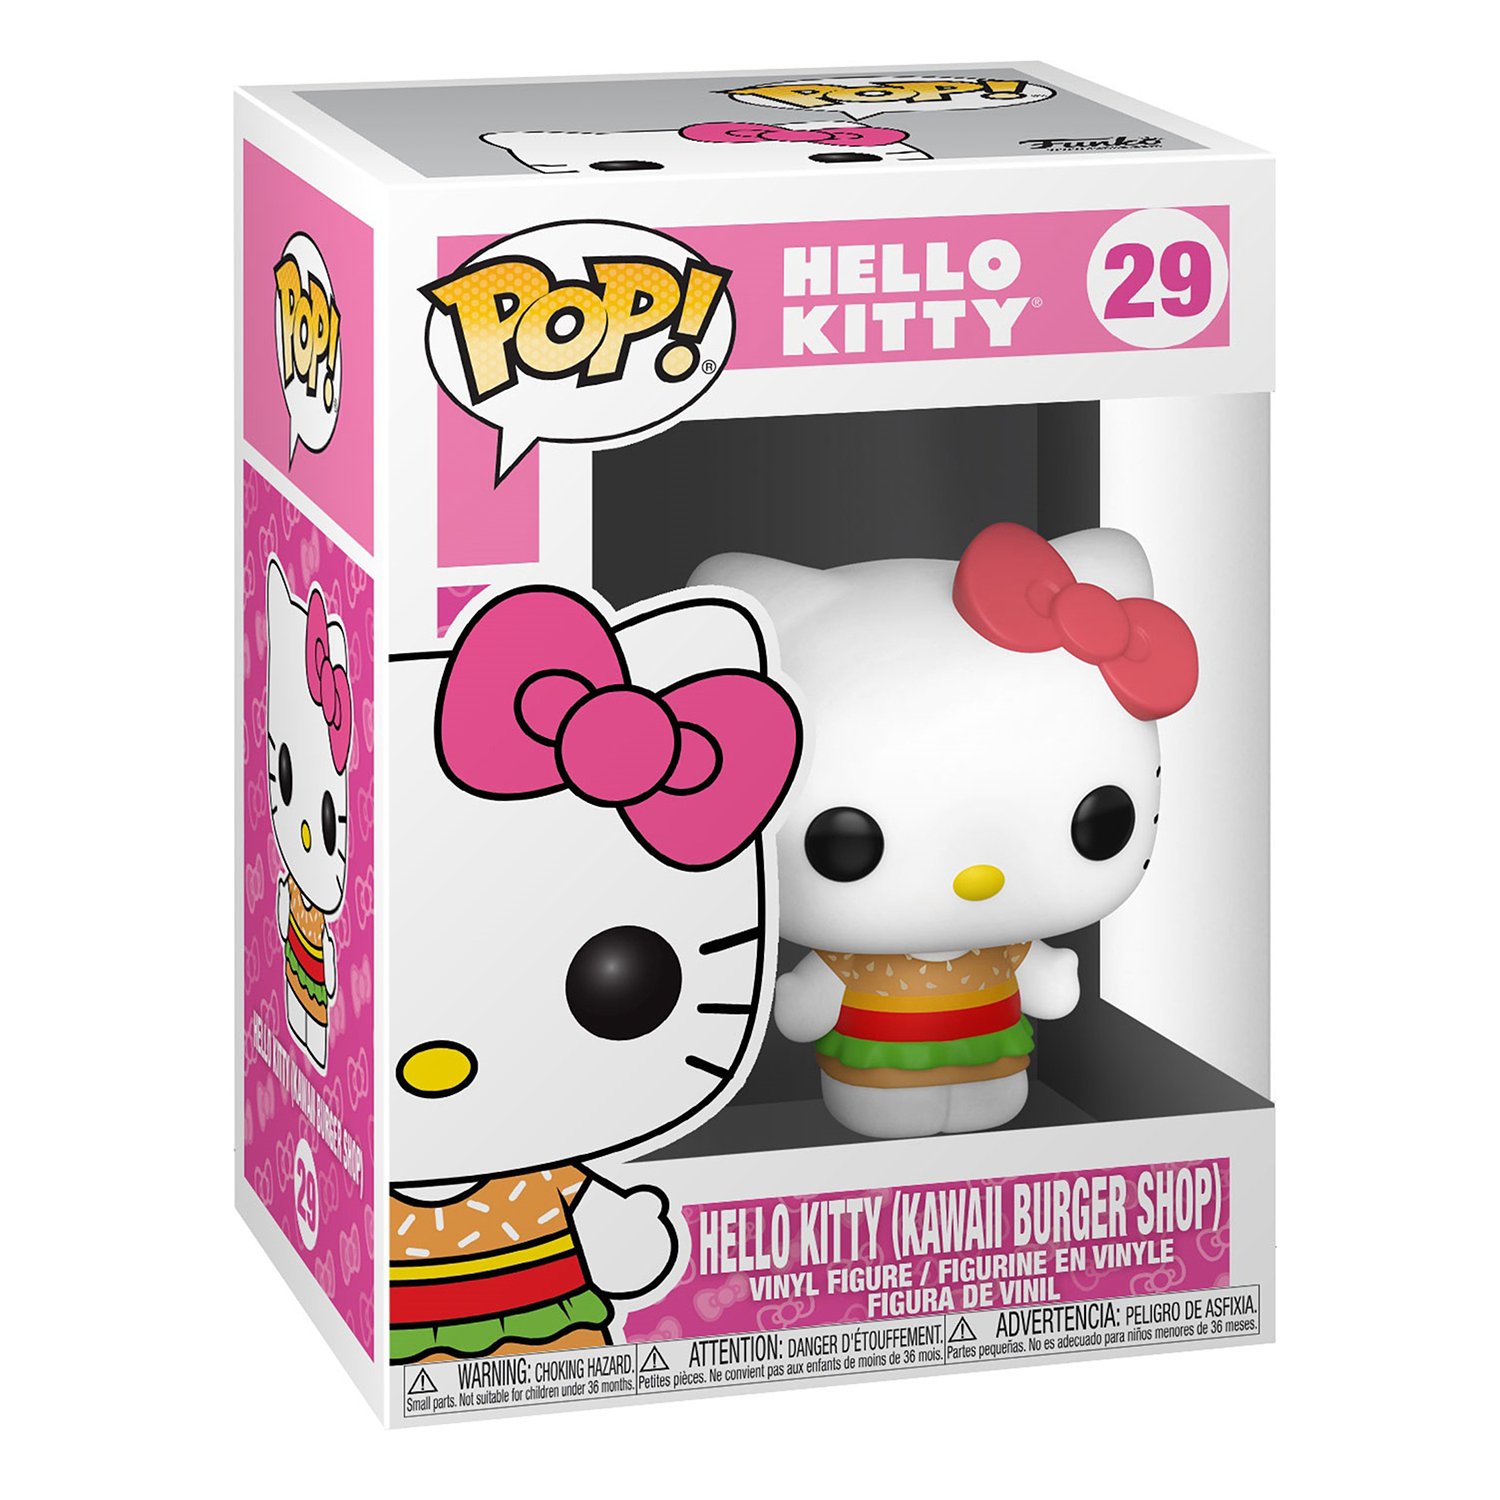 Игрушка Funko Pop Sanrio Hello Kitty Fun2534